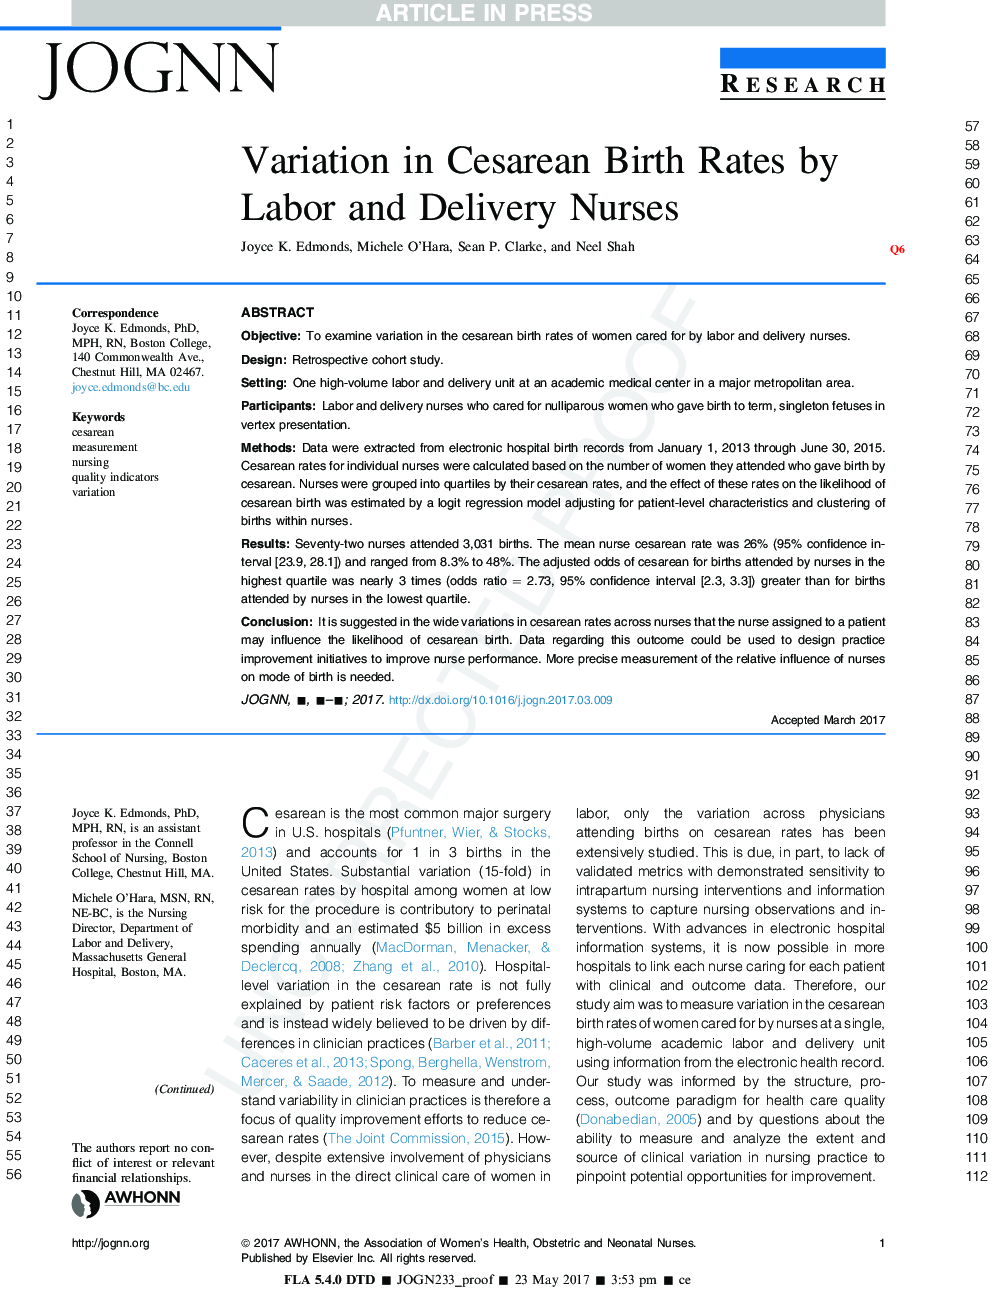 تغییرات در نرخ تولد سزارین توسط پرستاران کار و تحویل 